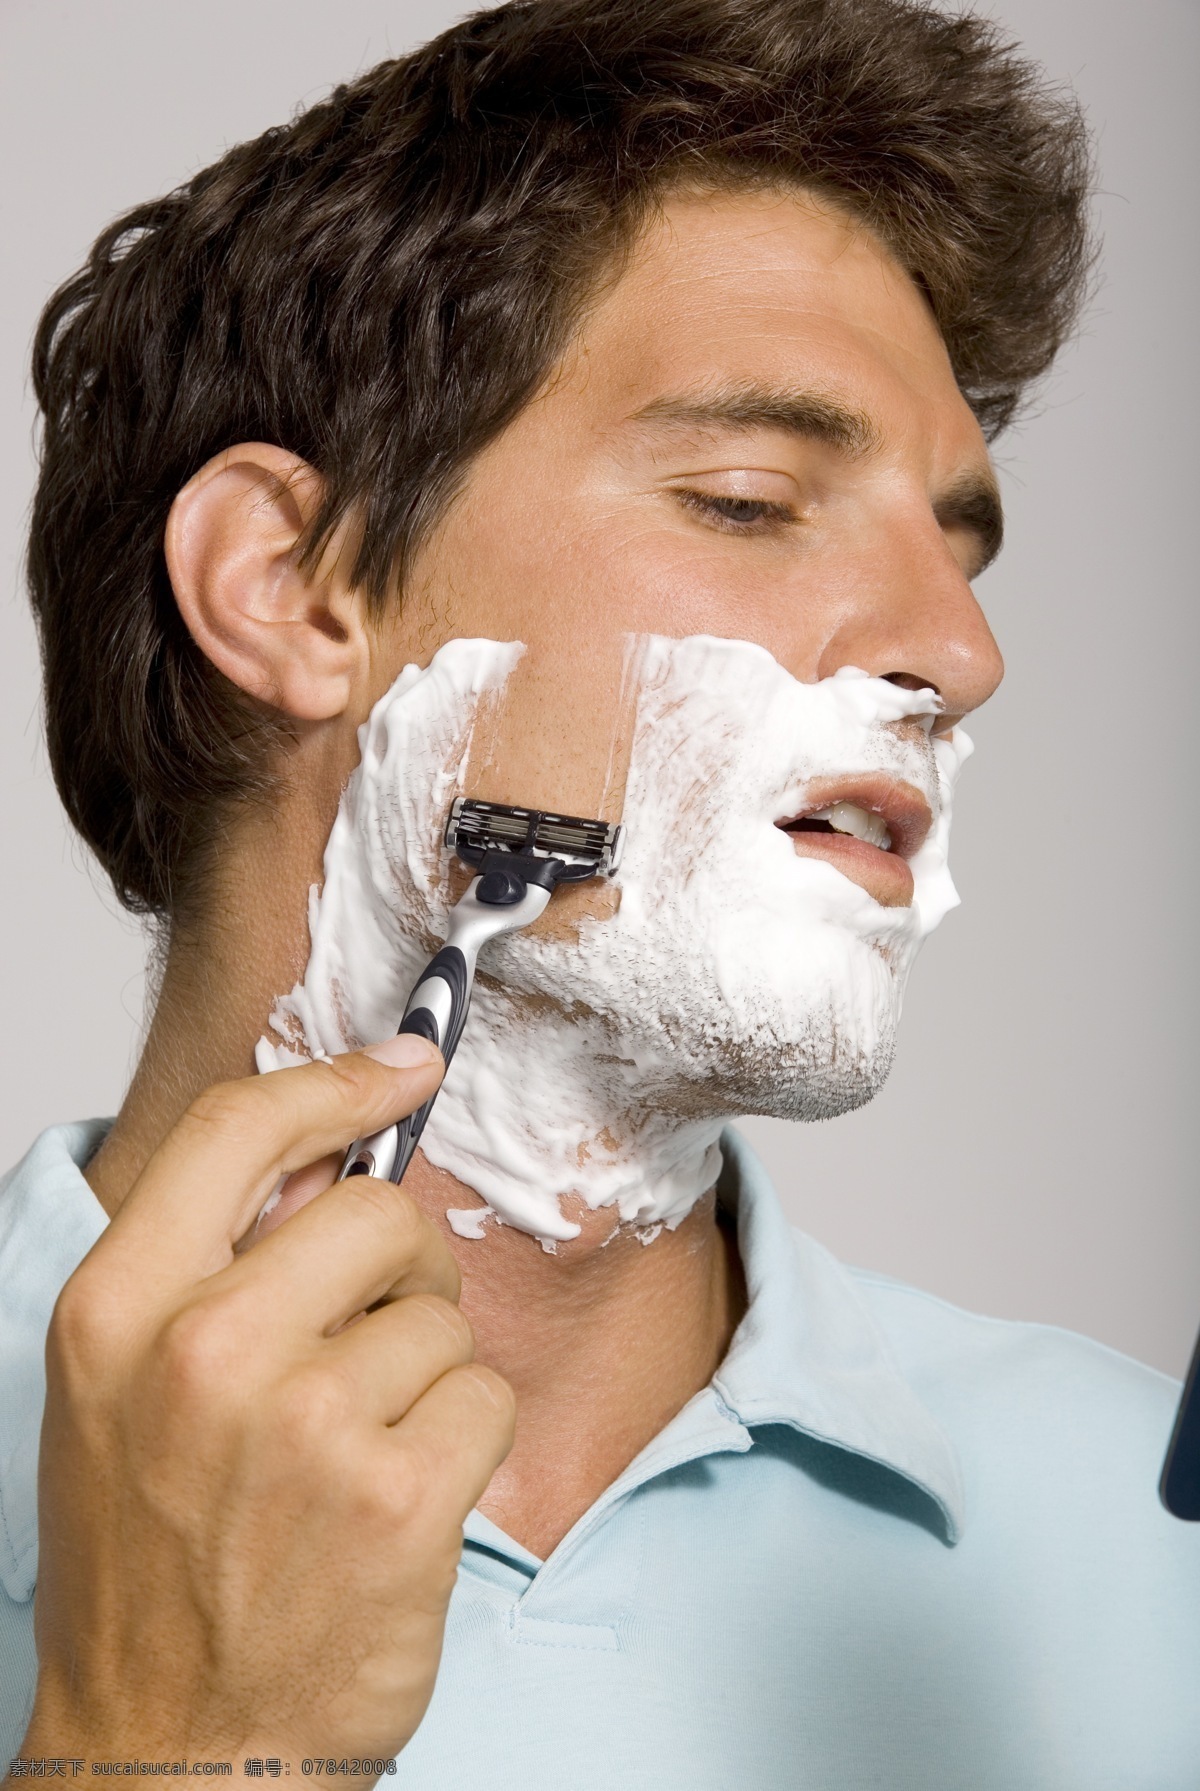 正 刮 胡须 魅力 男士 外国男性 男人 魅力男士 刮胡子 剃胡须 递须刀 剃须 刮胡须 生活人物 男人图片 人物图片